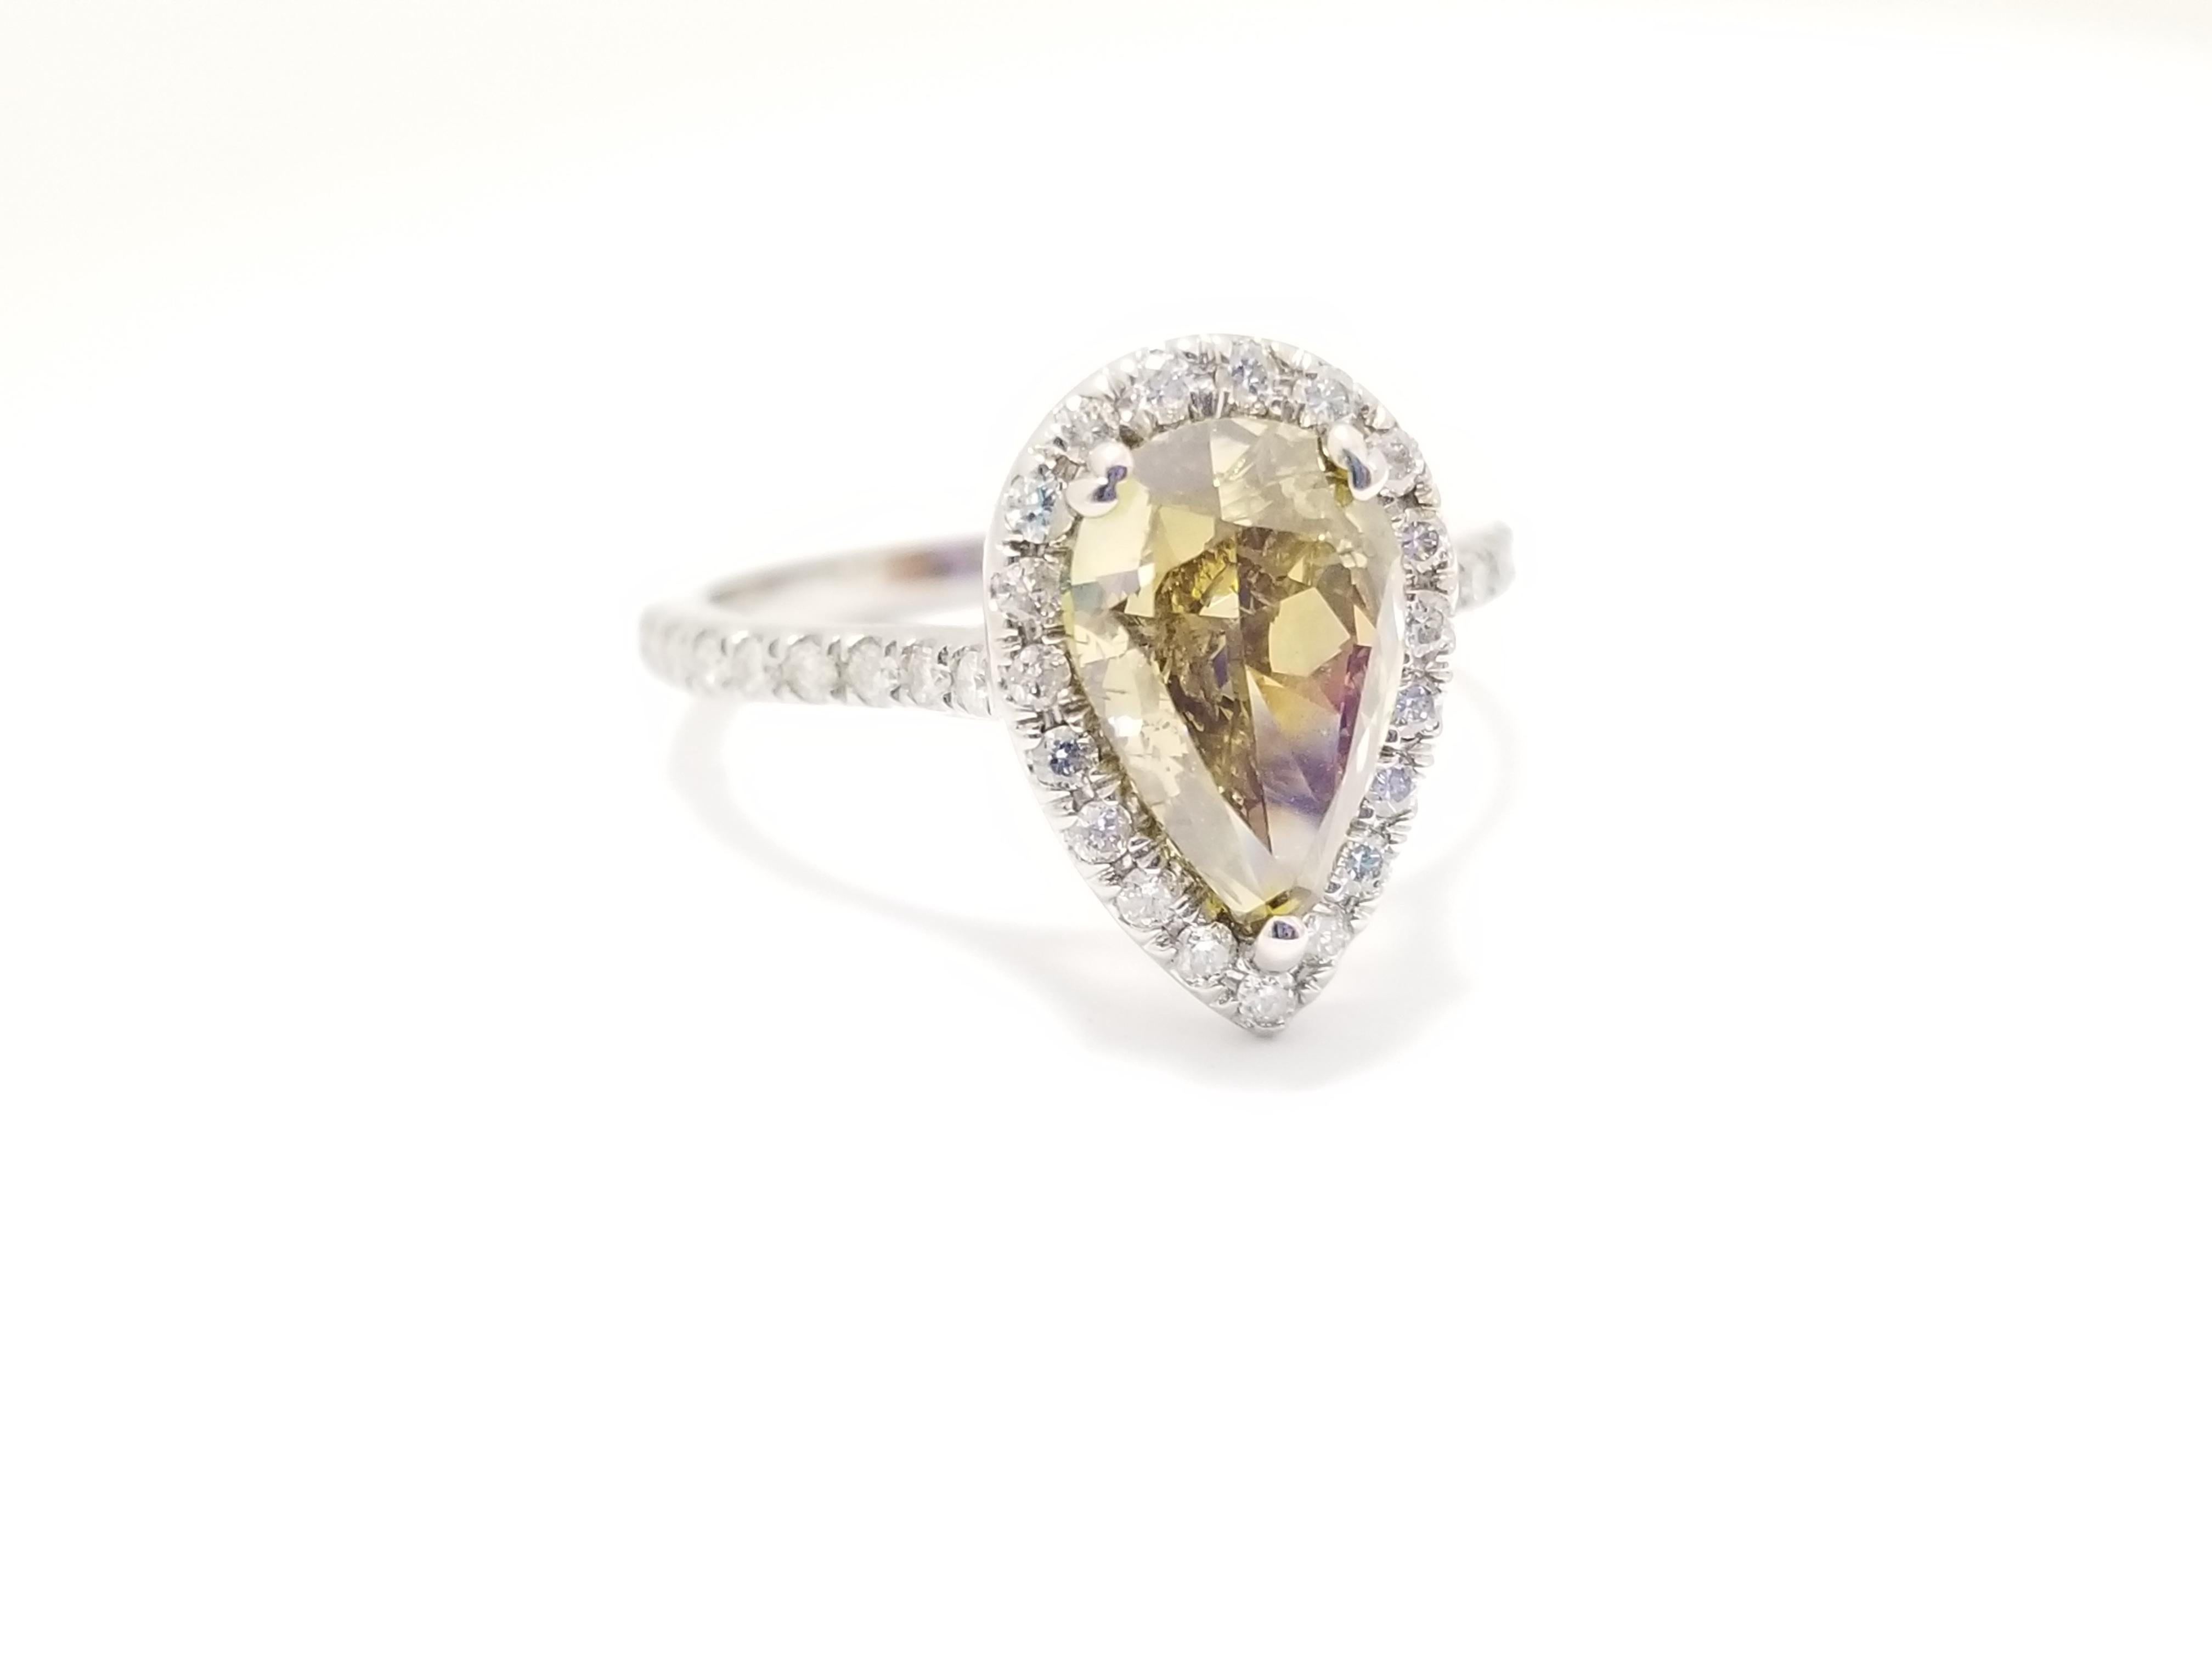 GIA Natural Pear Shape Diamond wiegt 2,02 Karat. Umgeben von gepflasterten weißen Diamanten in der birnenförmigen Fassung aus 14 Karat Weißgold.

Ringgröße 7 kann in der Größe geändert werden.
Center Pear Shape Diamant 2,02 cts
Seite runde Form